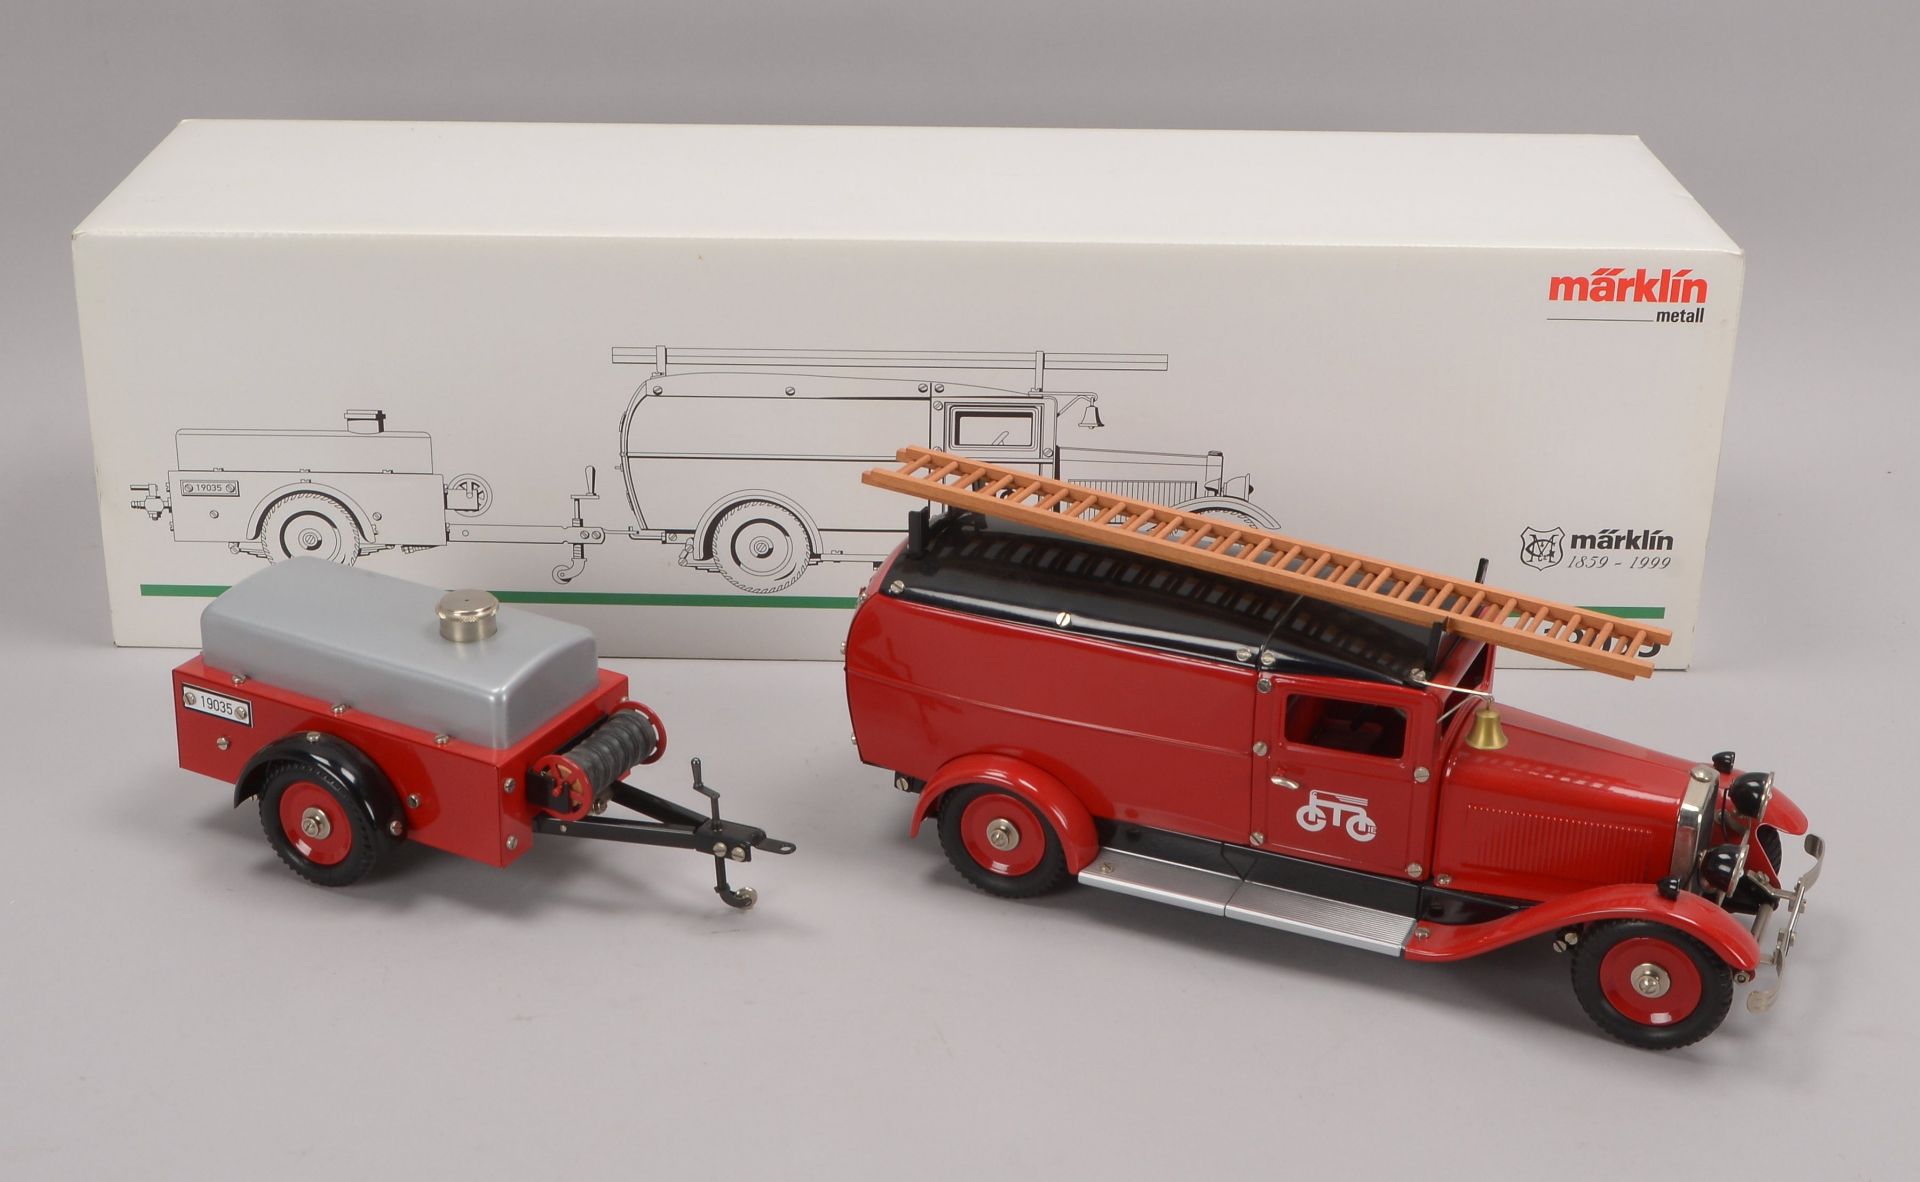 Modellfahrzeug, Maerklin -19035-, Feuerwehrwagen mit Anhaenger, Metall, Modell mit Uhrwerkantrieb, - Image 3 of 3